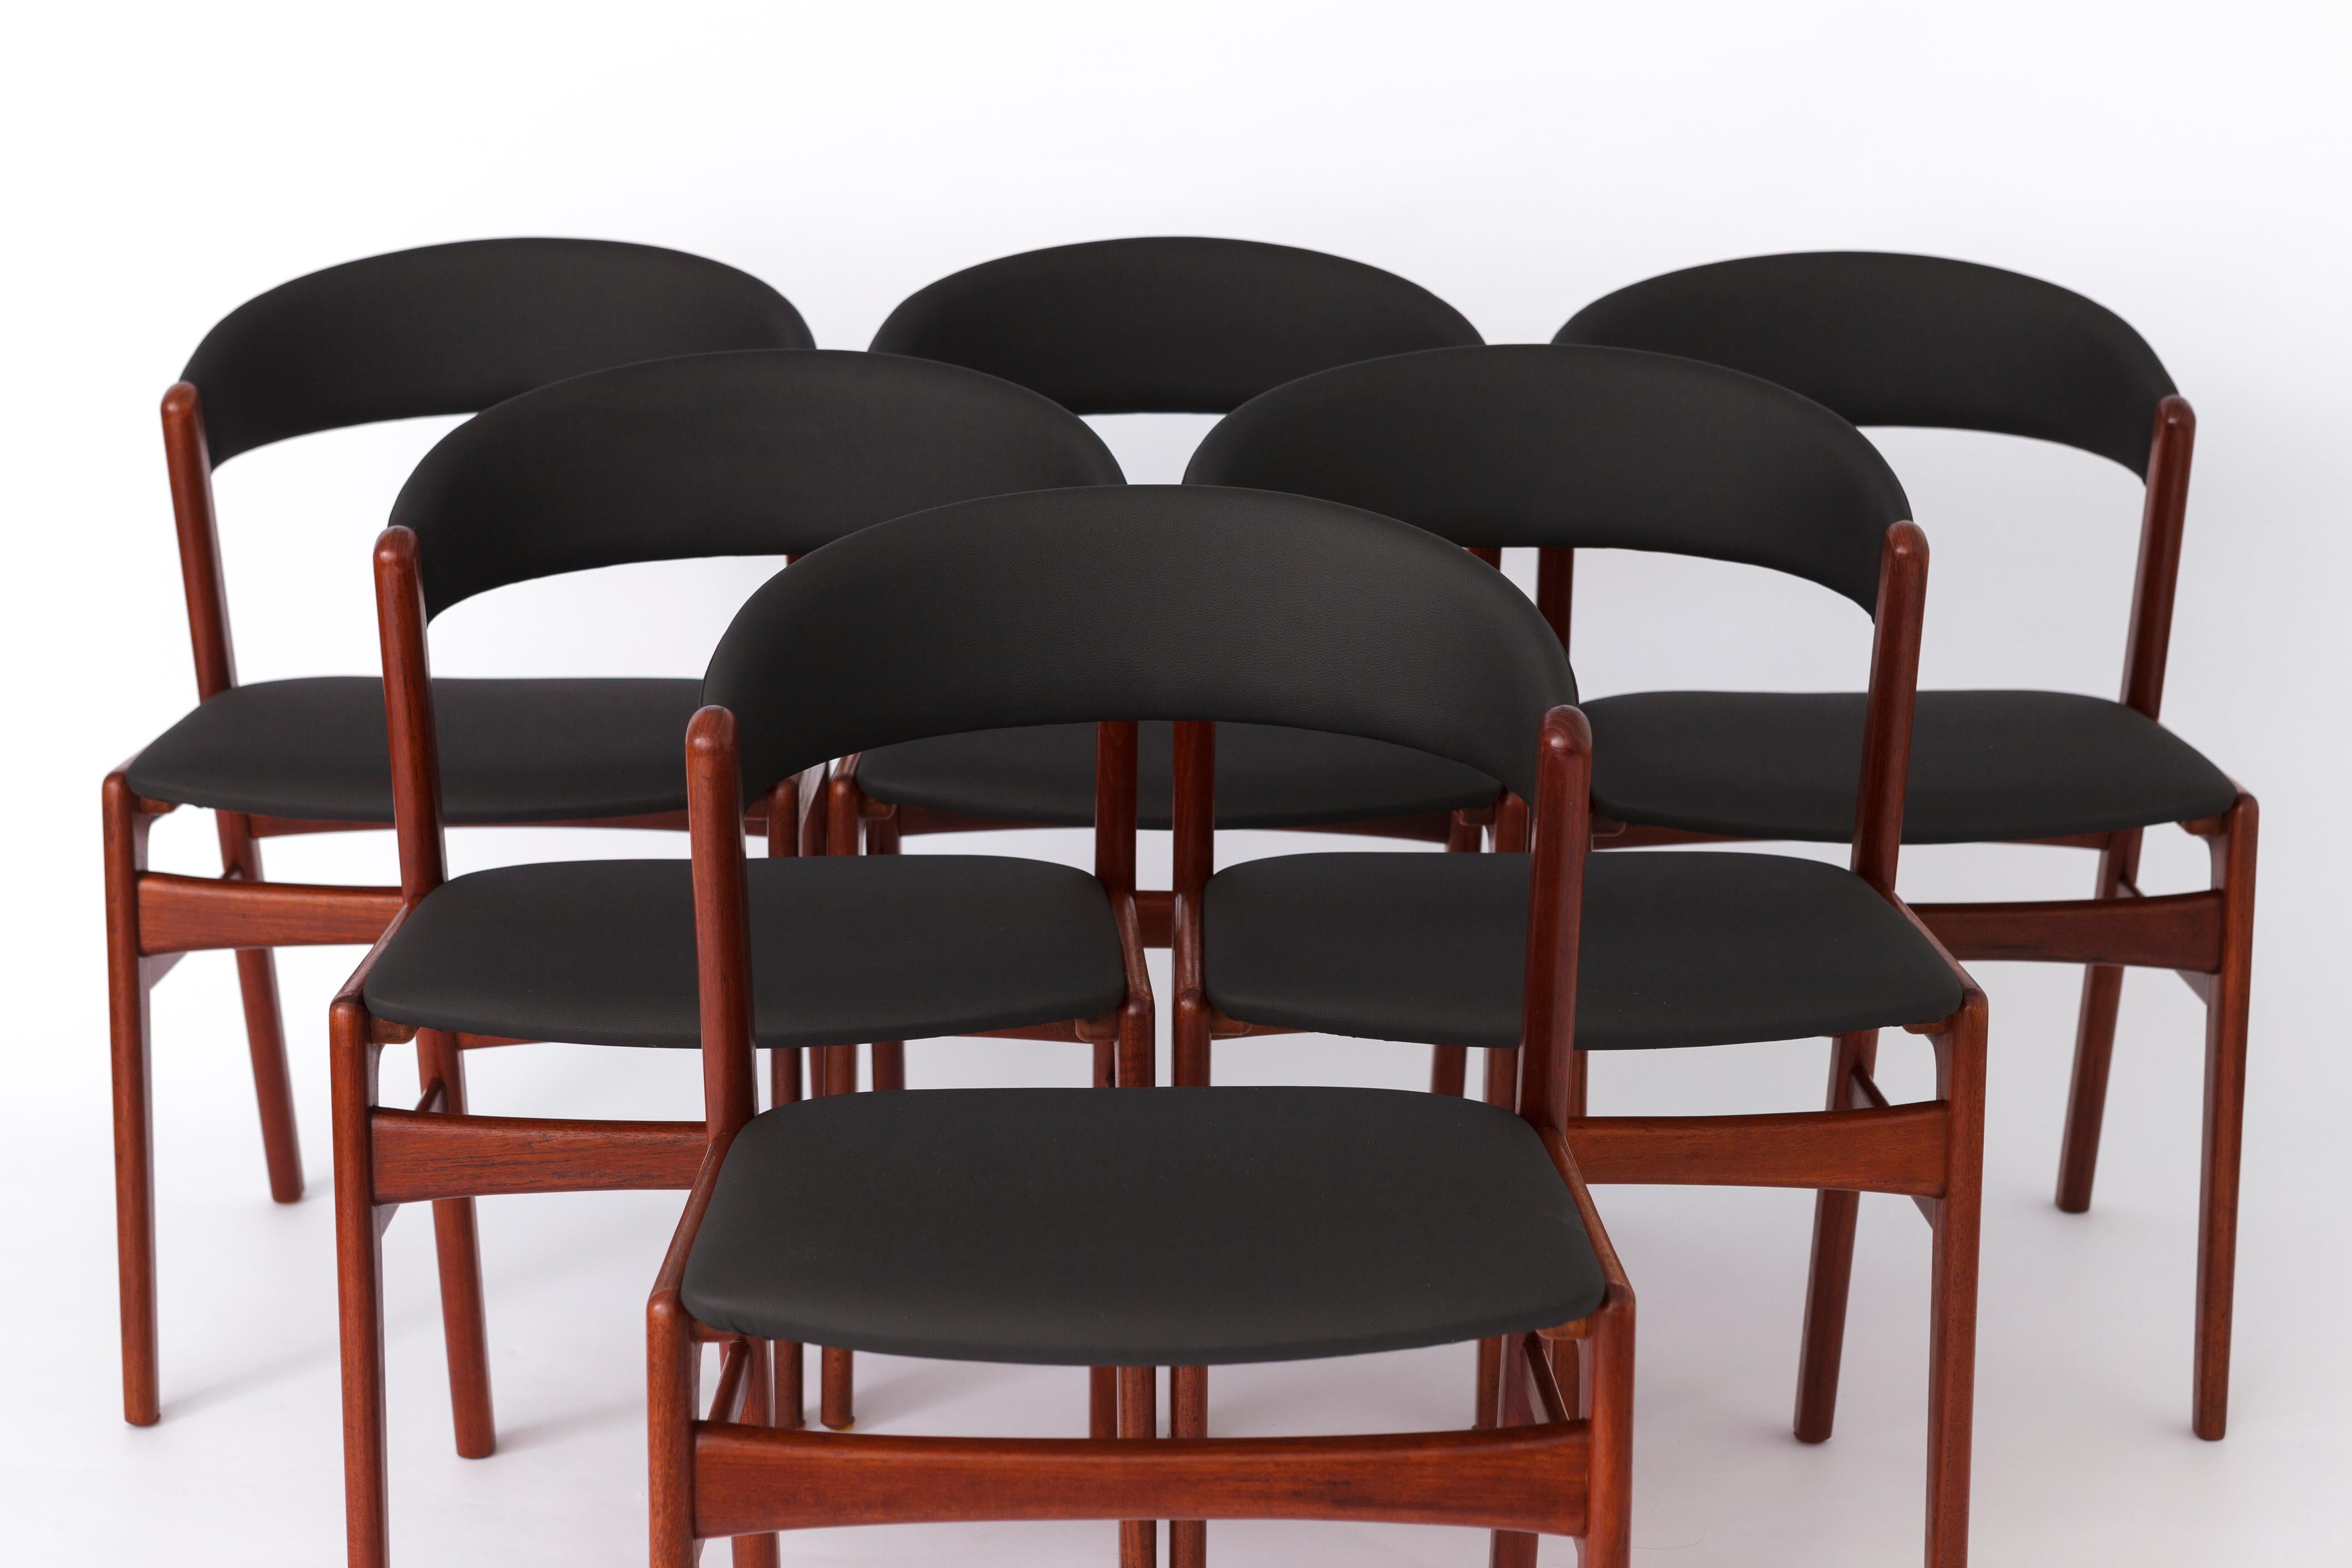 Satz von 6 Vintage-Esszimmerstühlen des Herstellers DUX, Schweden, aus den 1960er Jahren. 
Modellbezeichnung: Ribbon Back, aufgrund der charakteristischen Rückenlehnenform, die an ein Band erinnert. 
Der angezeigte Preis gilt für einen Satz von 6